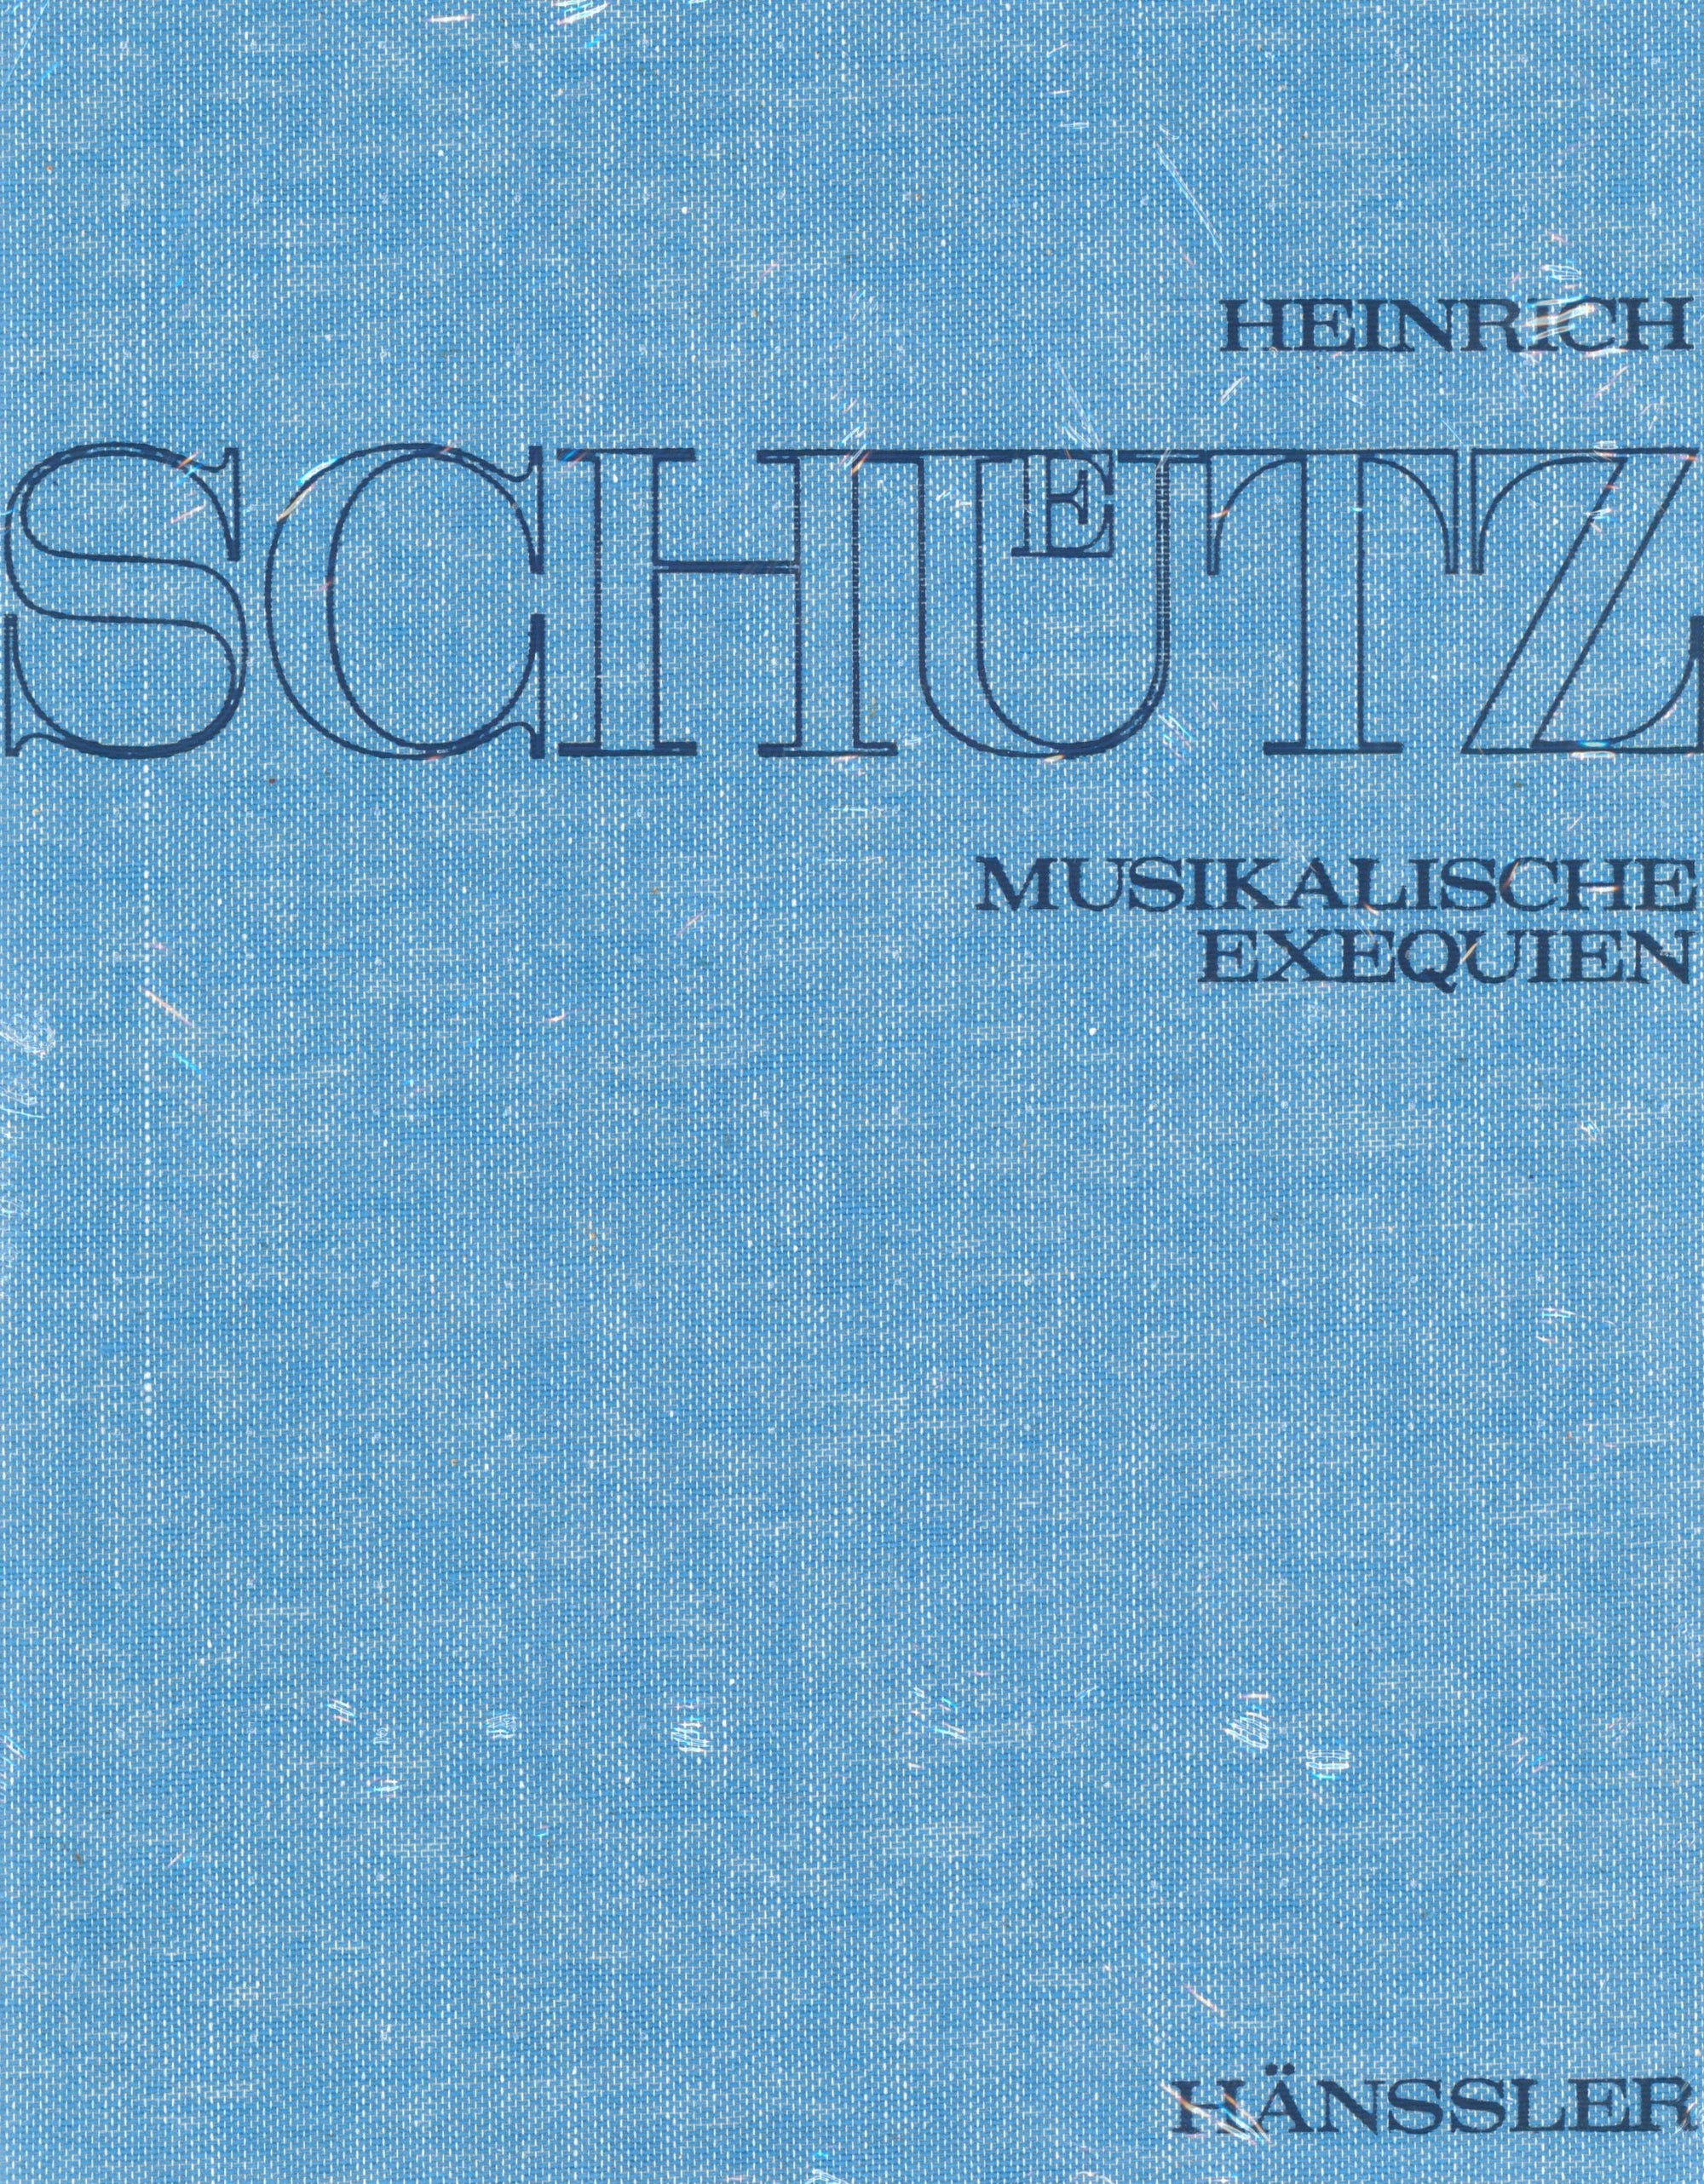 Schütz: Musikalische Exequien, SWV 279–281, Op. 7